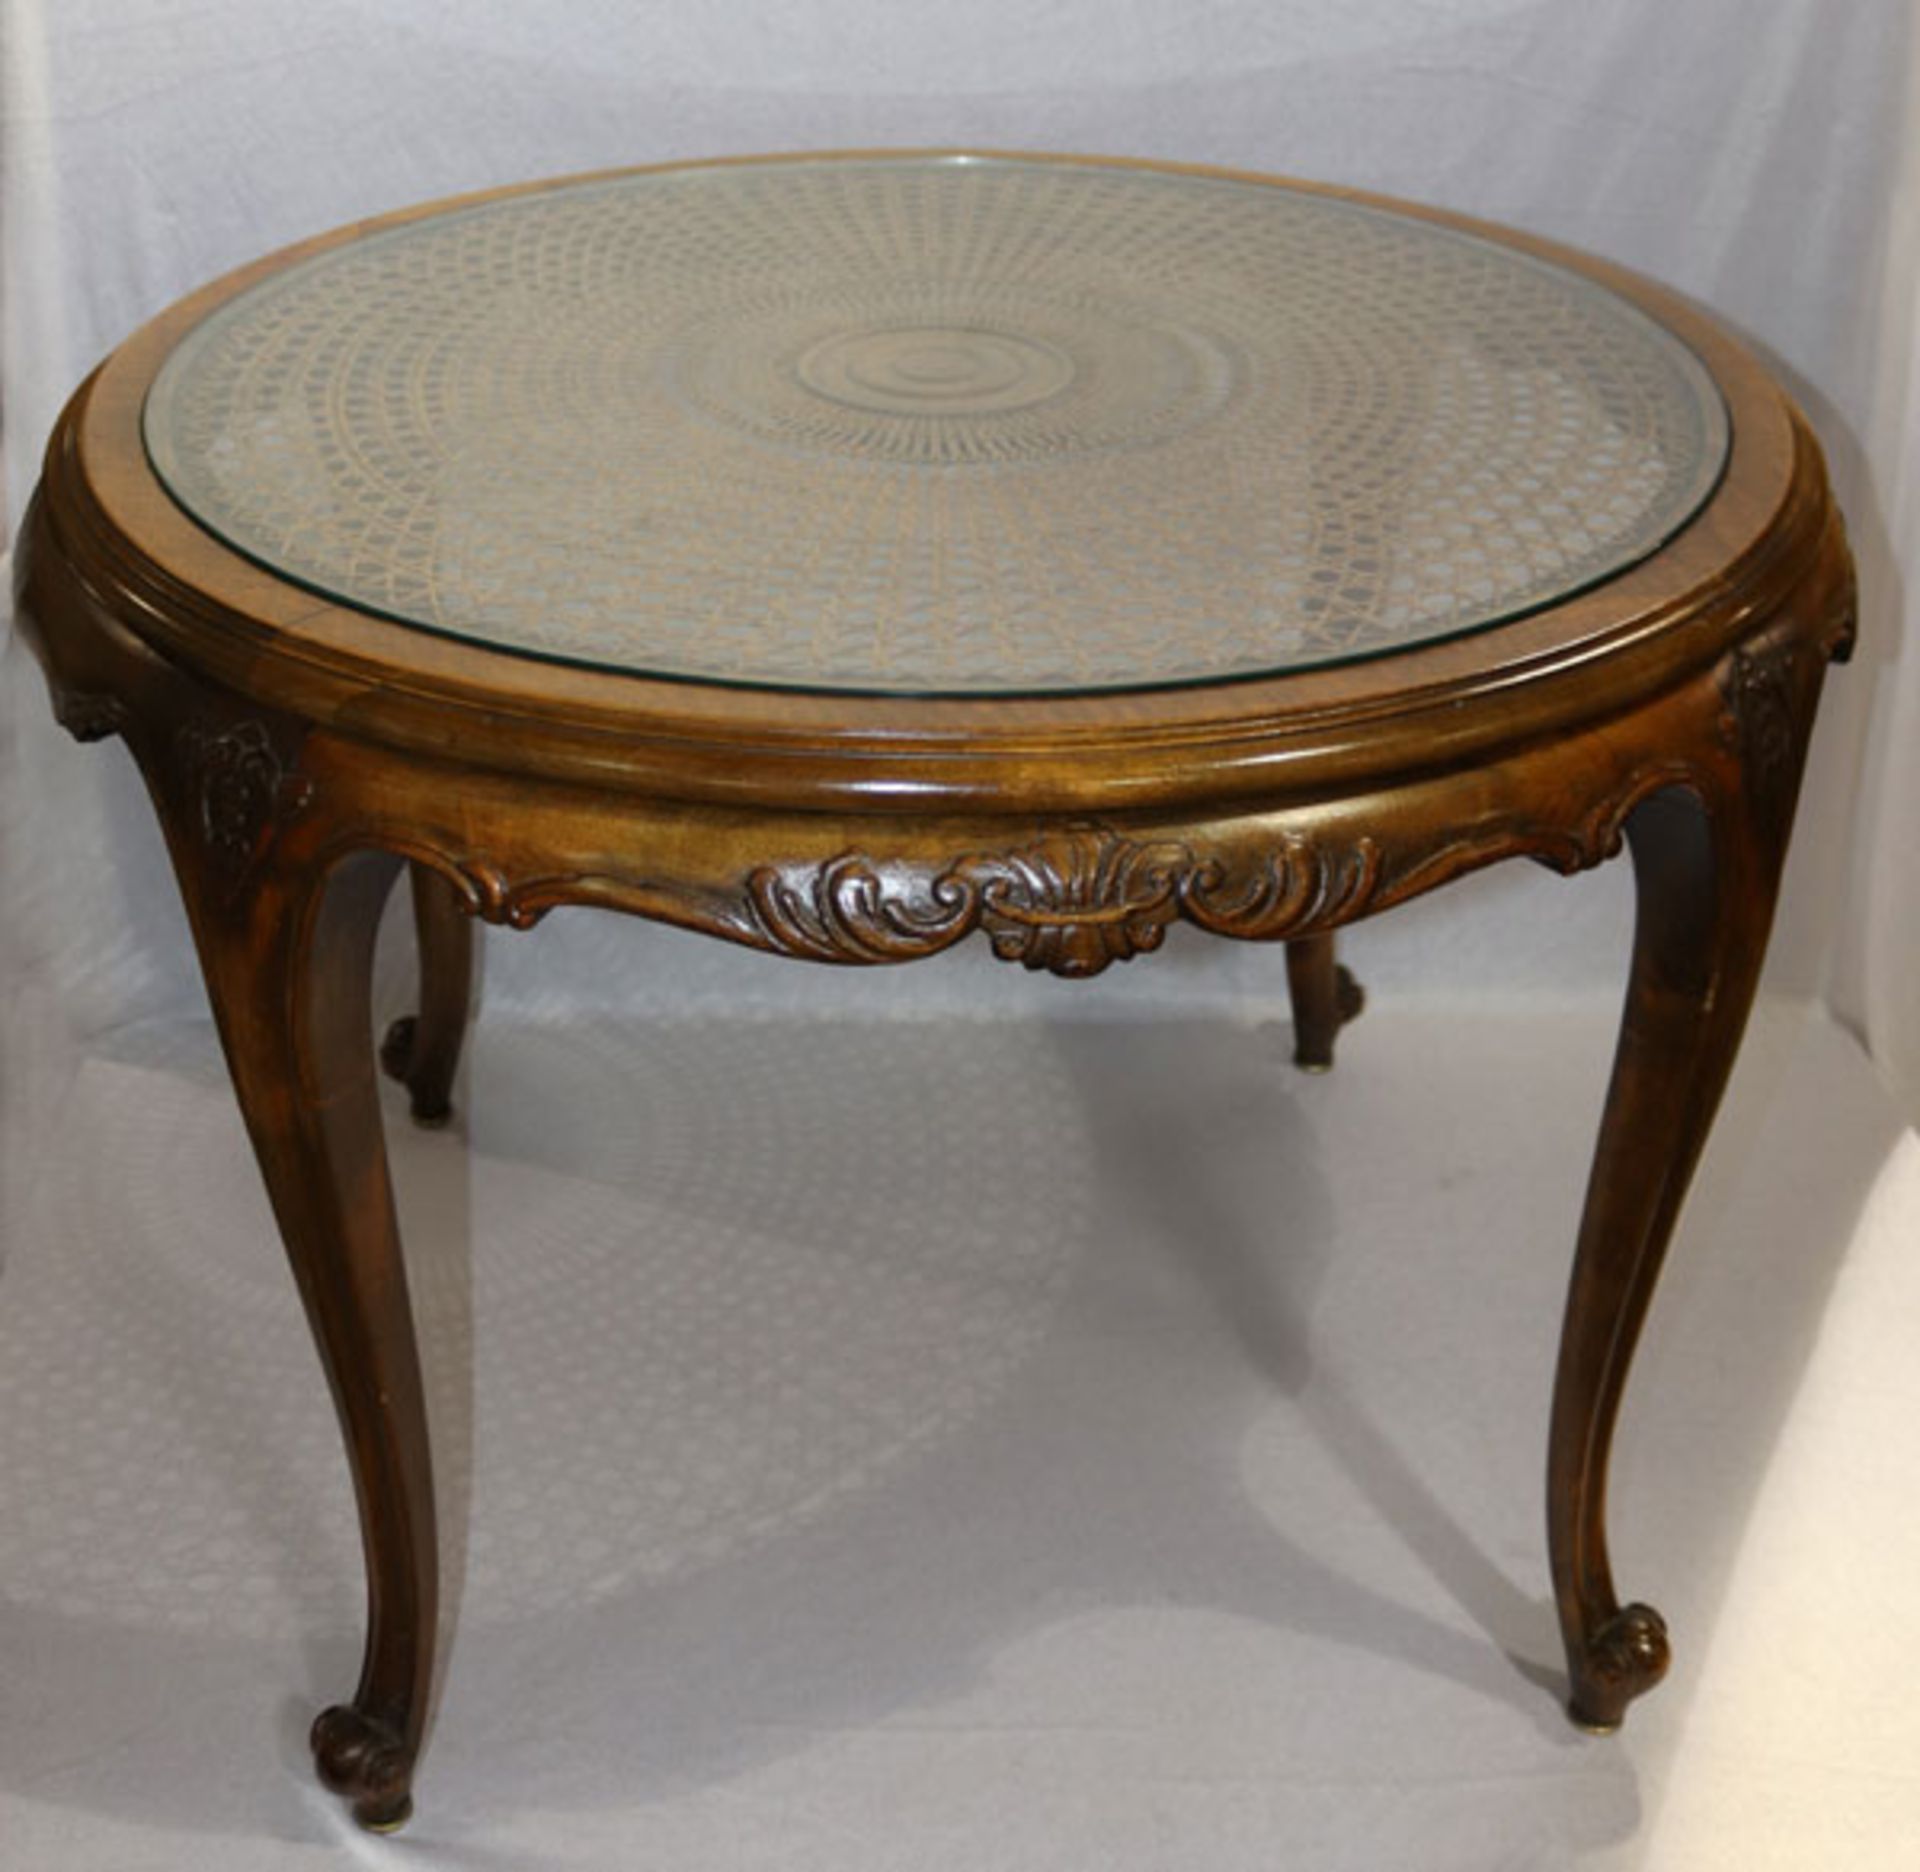 Runder Tisch in Art Chippendale mit Flechteinlage und Glasplatte, H 63 cm, D 85 cm, Gebrauchsspuren